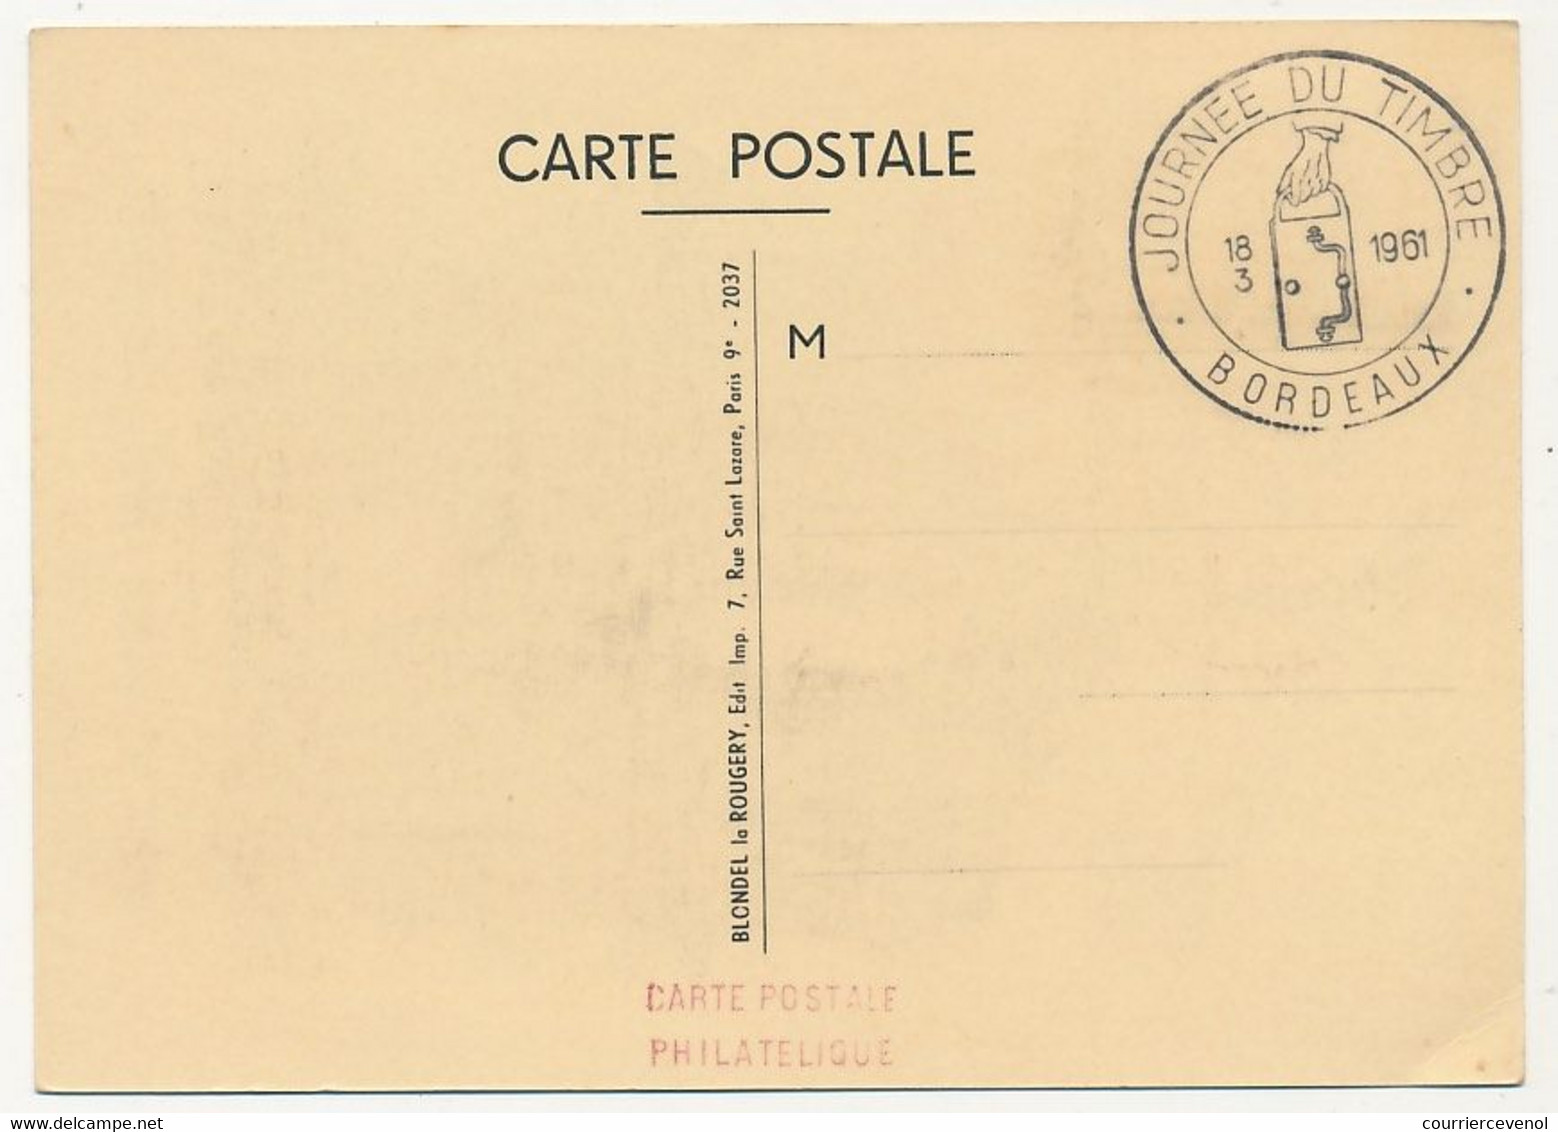 FRANCE - Carte Locale - Journée Du Timbre 1961 - 0,20 + 0,05 Facteur Petite Poste - BORDEAUX - 18/3/1961 - Lettres & Documents